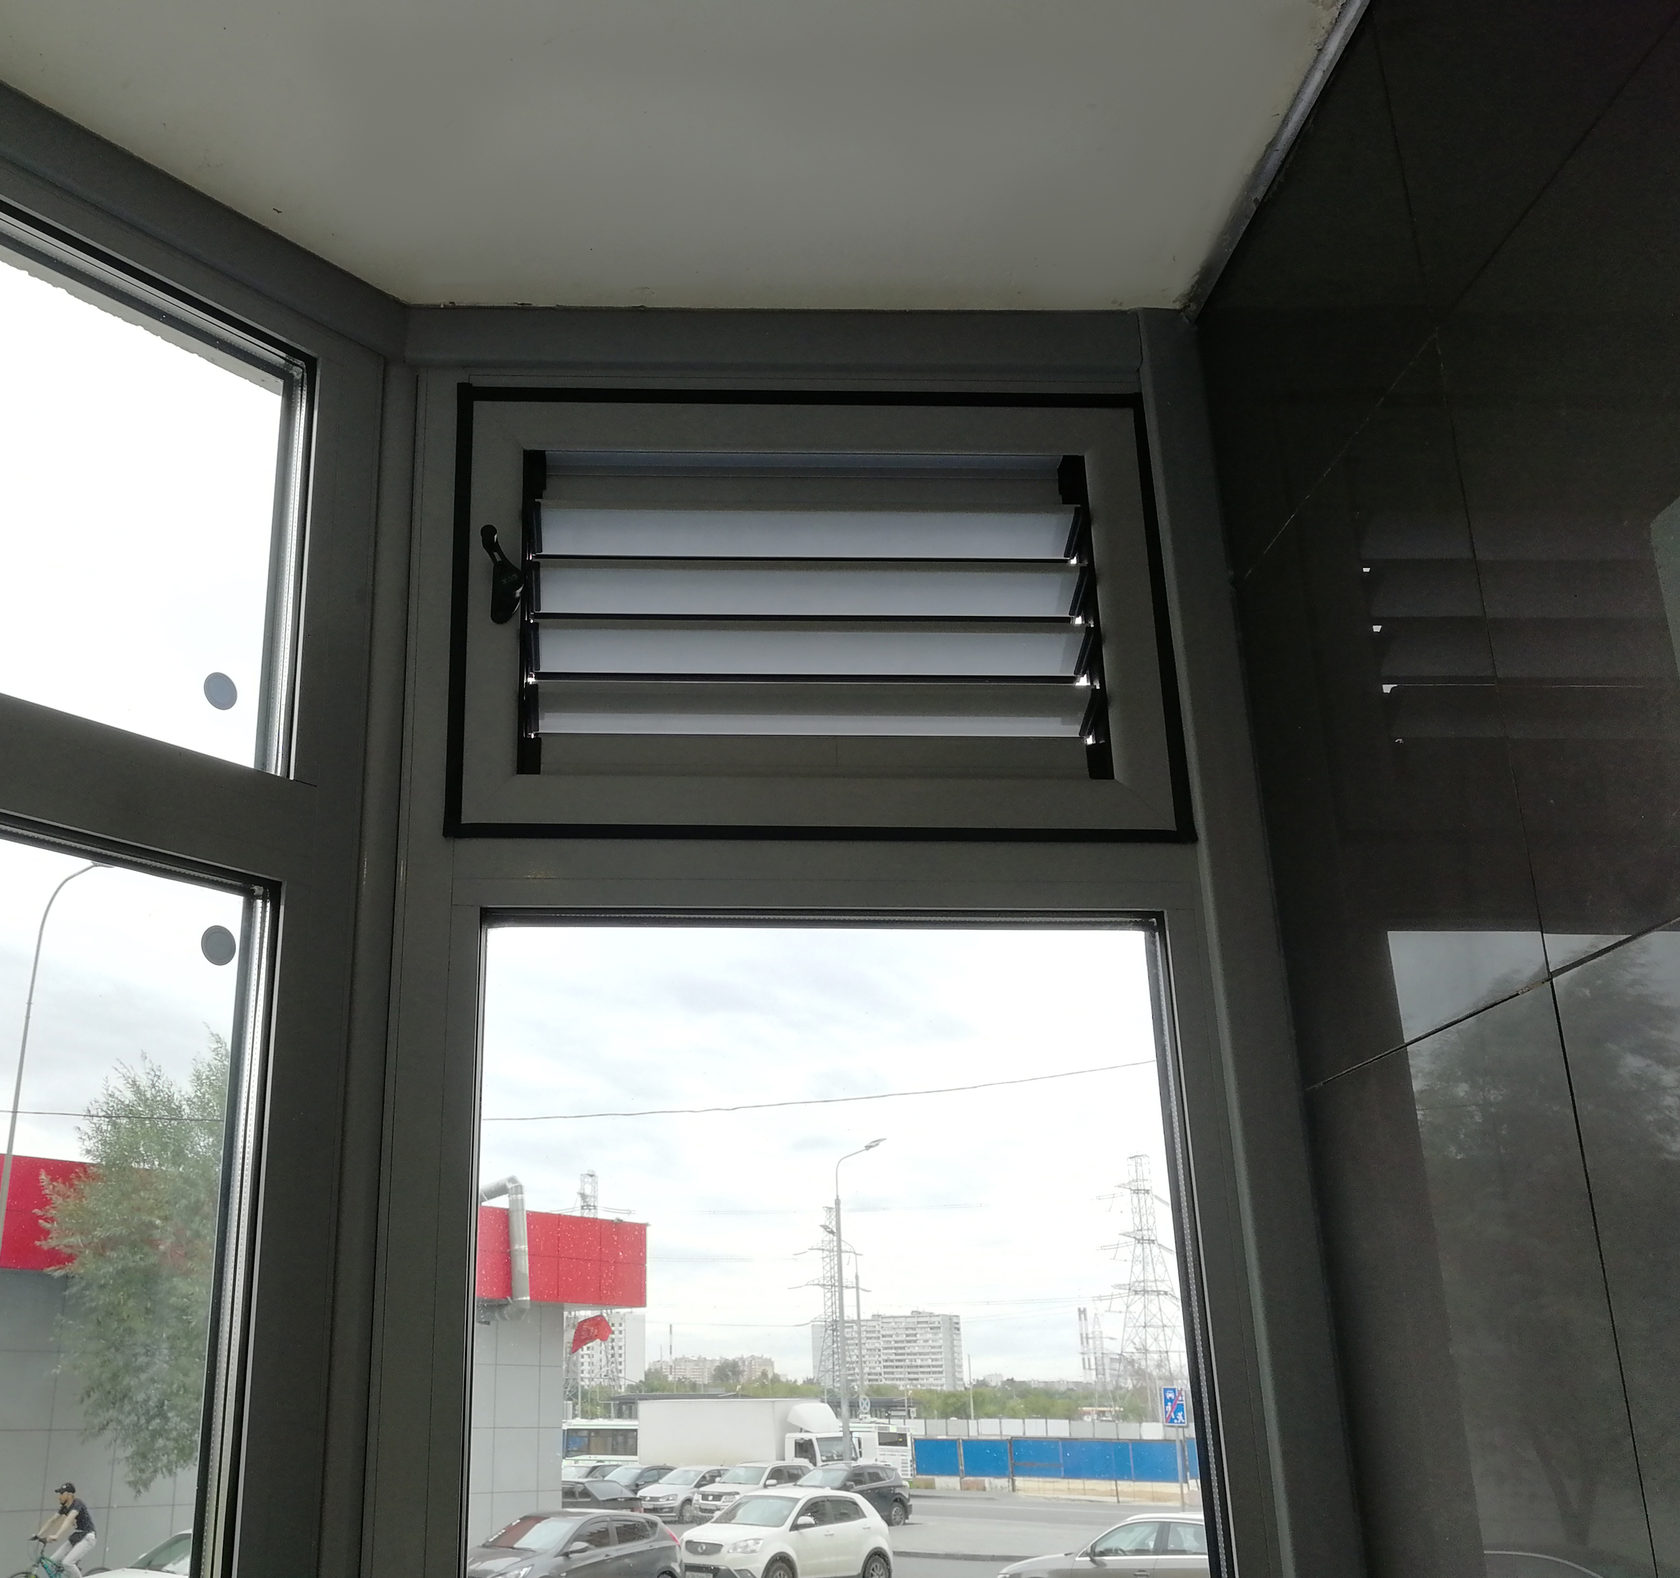 Фасадные регулируемые вентиляционные решетки вместо стеклопакета. Расширение зоны проветривания и вентиляции. Герметичное закрытие жалюзи.